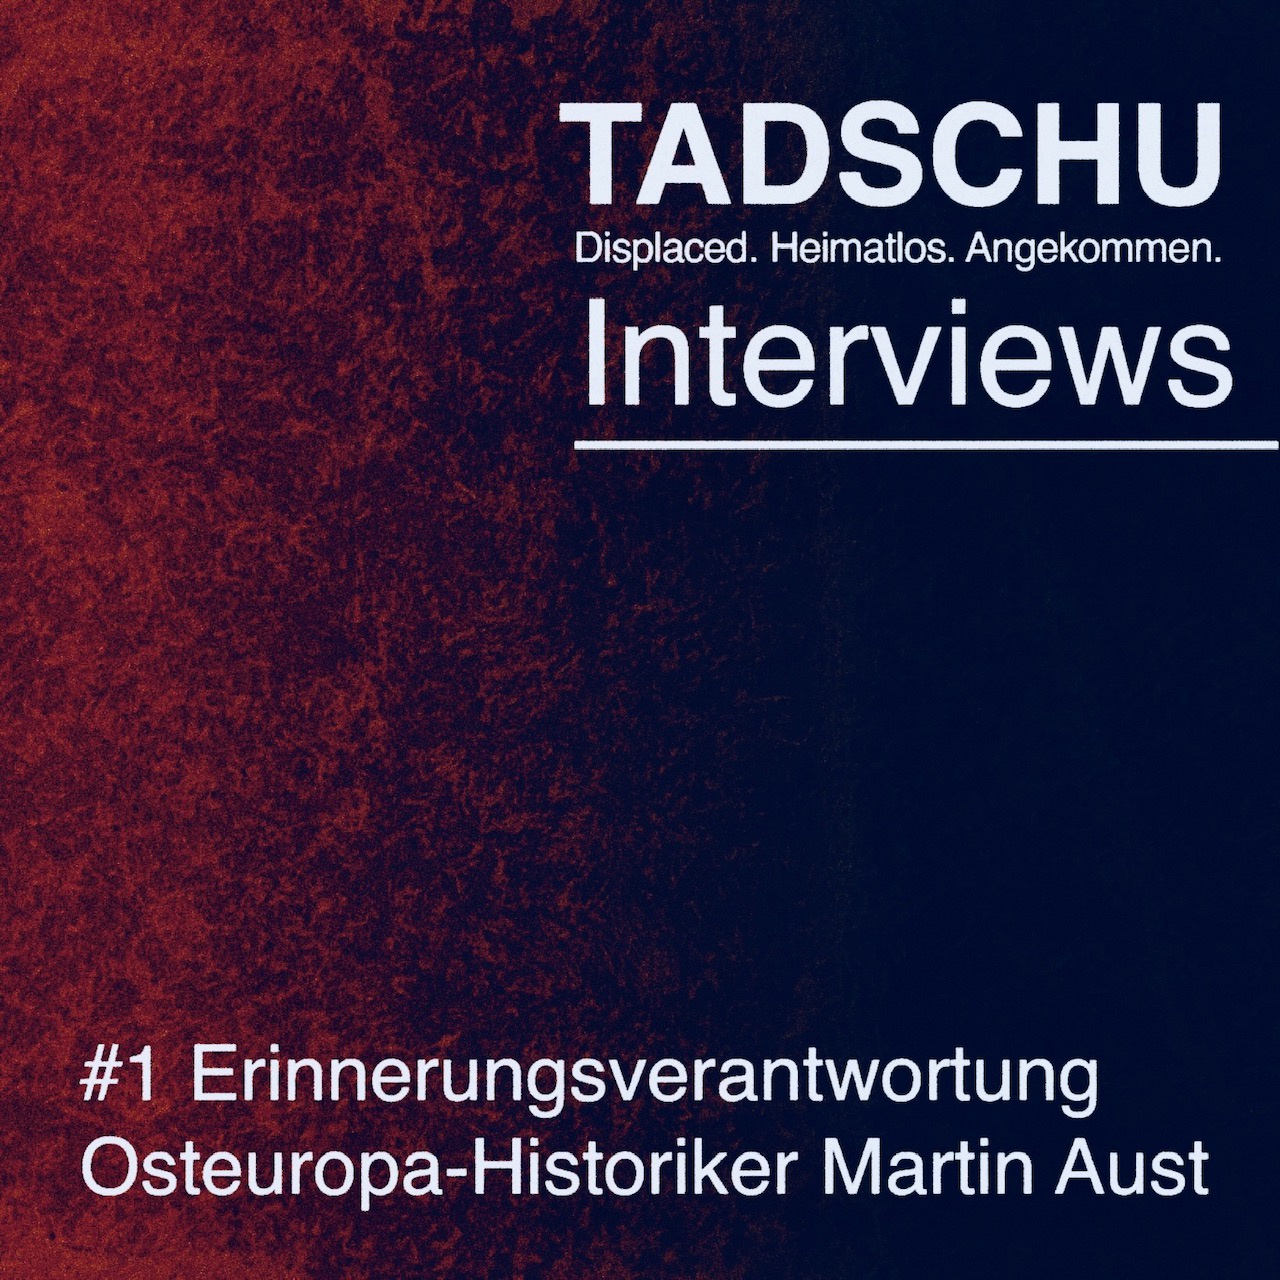 Tadschu Interviews - #1 Erinnerungsverantwortung: Martin Aust